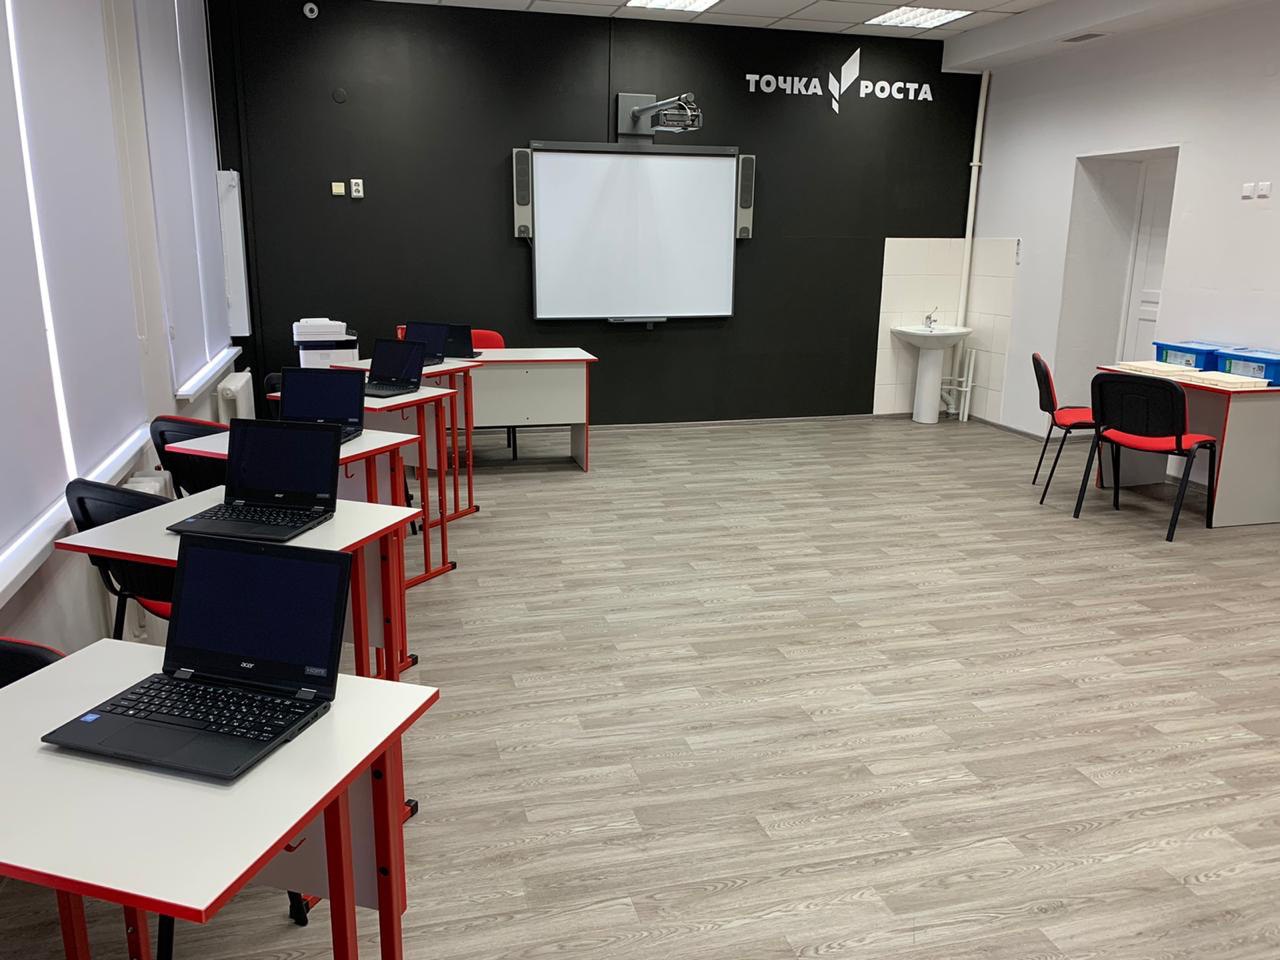 42 центра «Точка роста» готовы к открытию в школах Кузбасса по нацпроекту «Образование» 